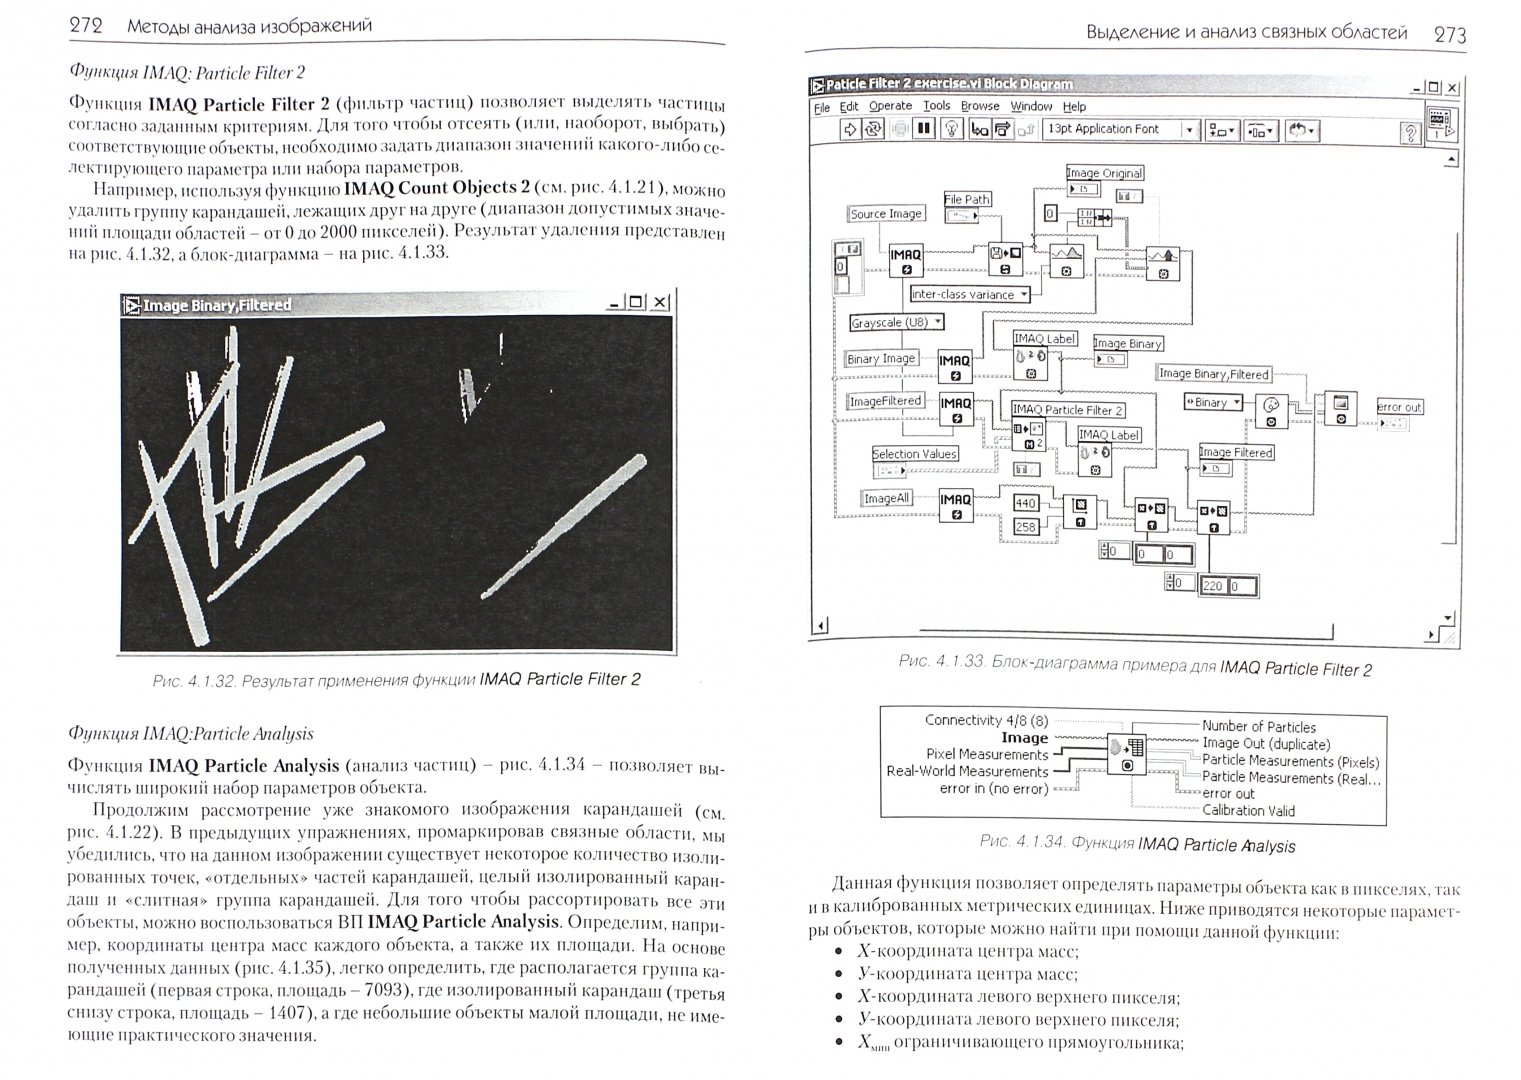 Иллюстрация 1 из 7 для Обработка и анализ цифровых изображений с примерами на Labview И Imaq Vision - Визильтер, Желтов, Князь | Лабиринт - книги. Источник: Лабиринт